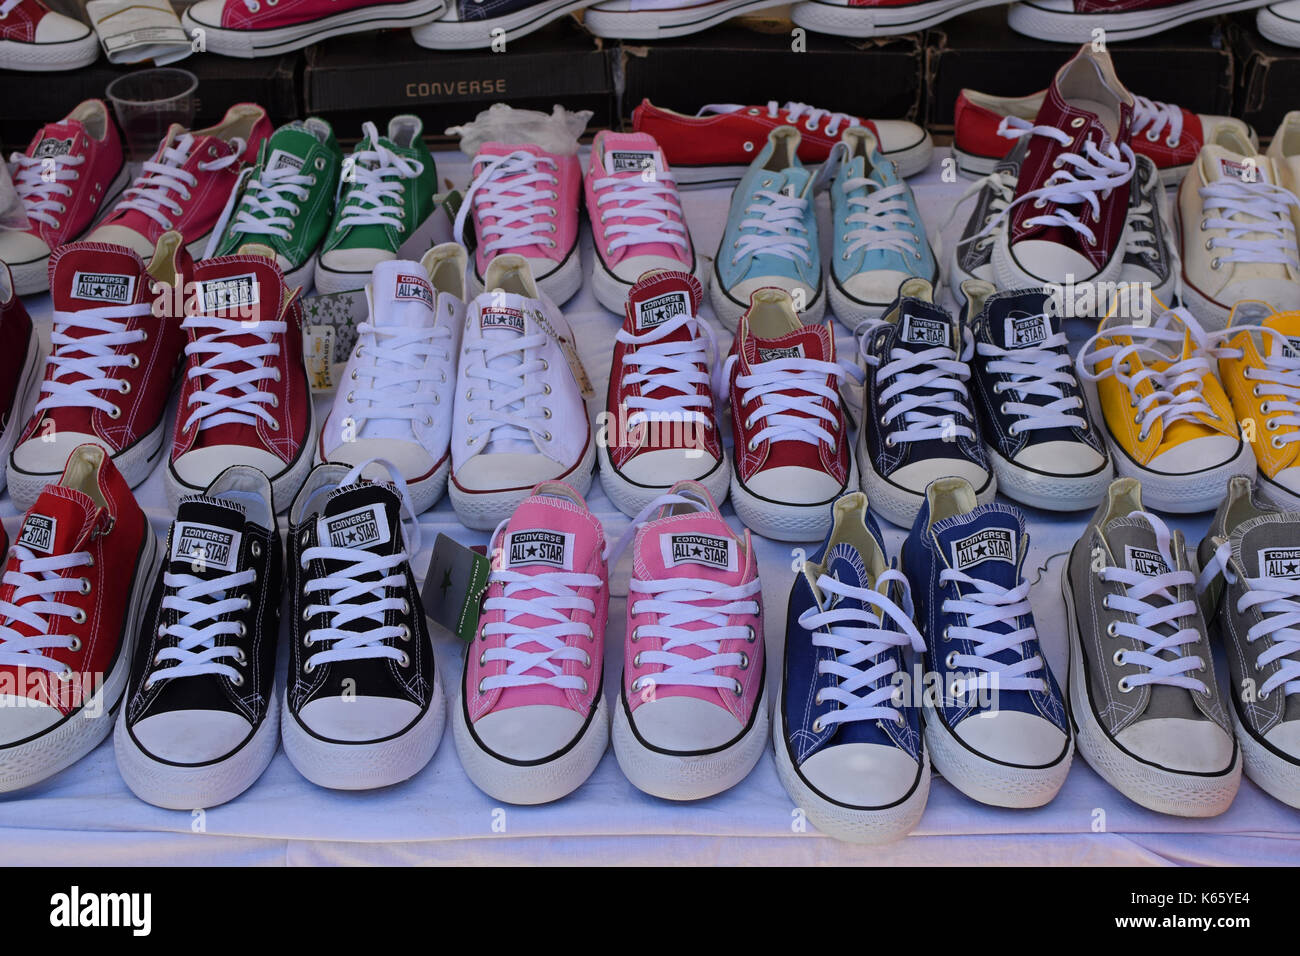 Athènes, Grèce - 15 août 2016 : converse all star chaussures casual chaussures de sport colorées pour la vente. Banque D'Images